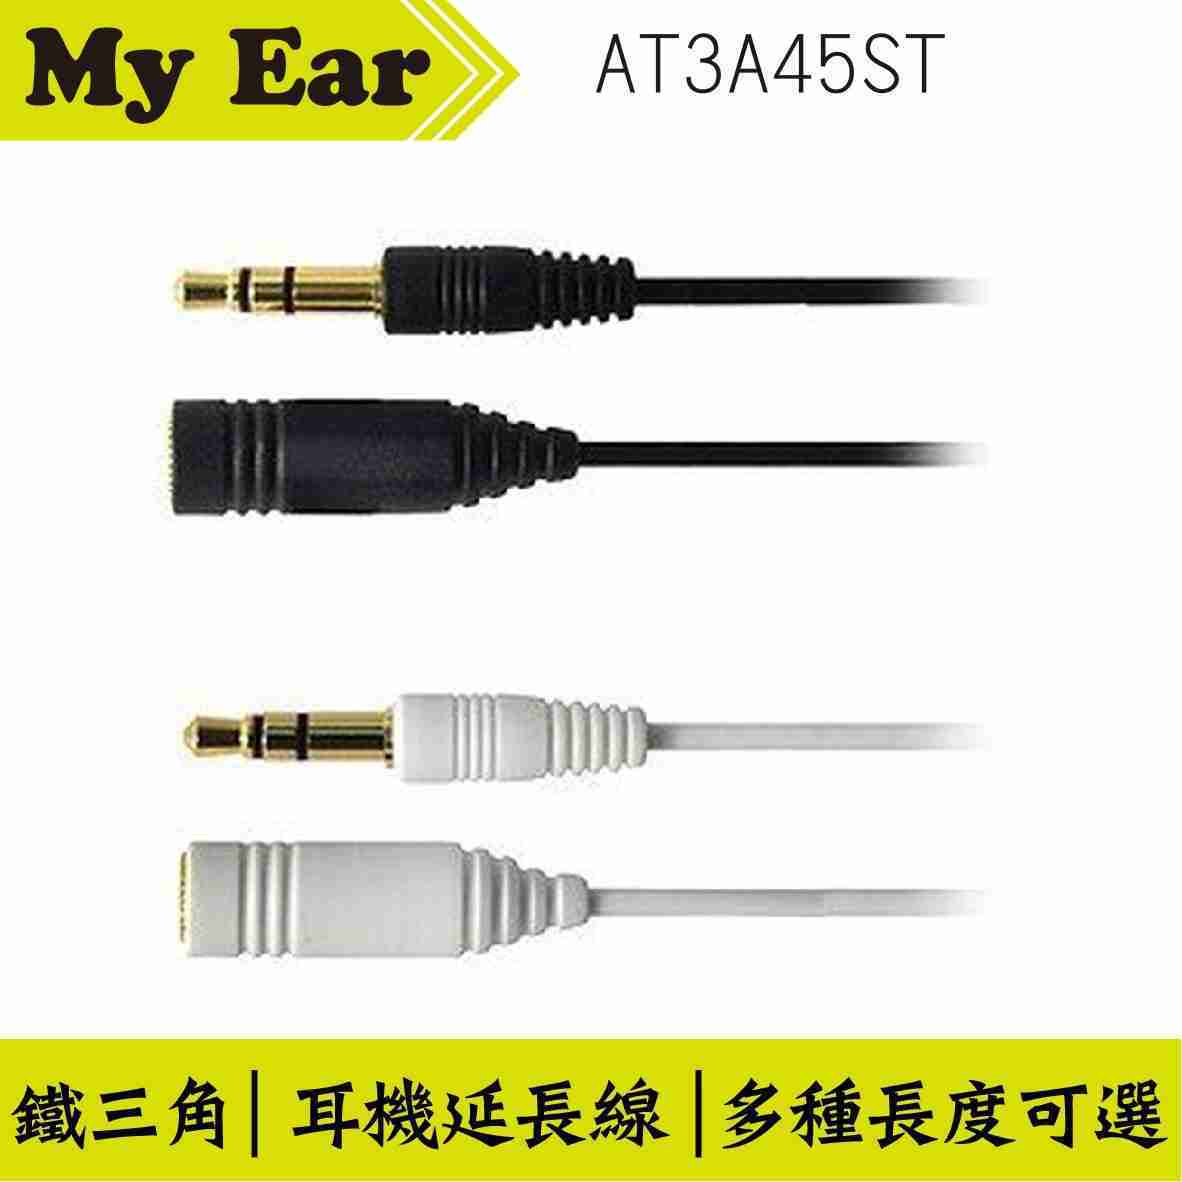 鐵三角 AT3A45ST 直頭 耳機延長線 雙色 0.5M | My Ear 耳機專門店